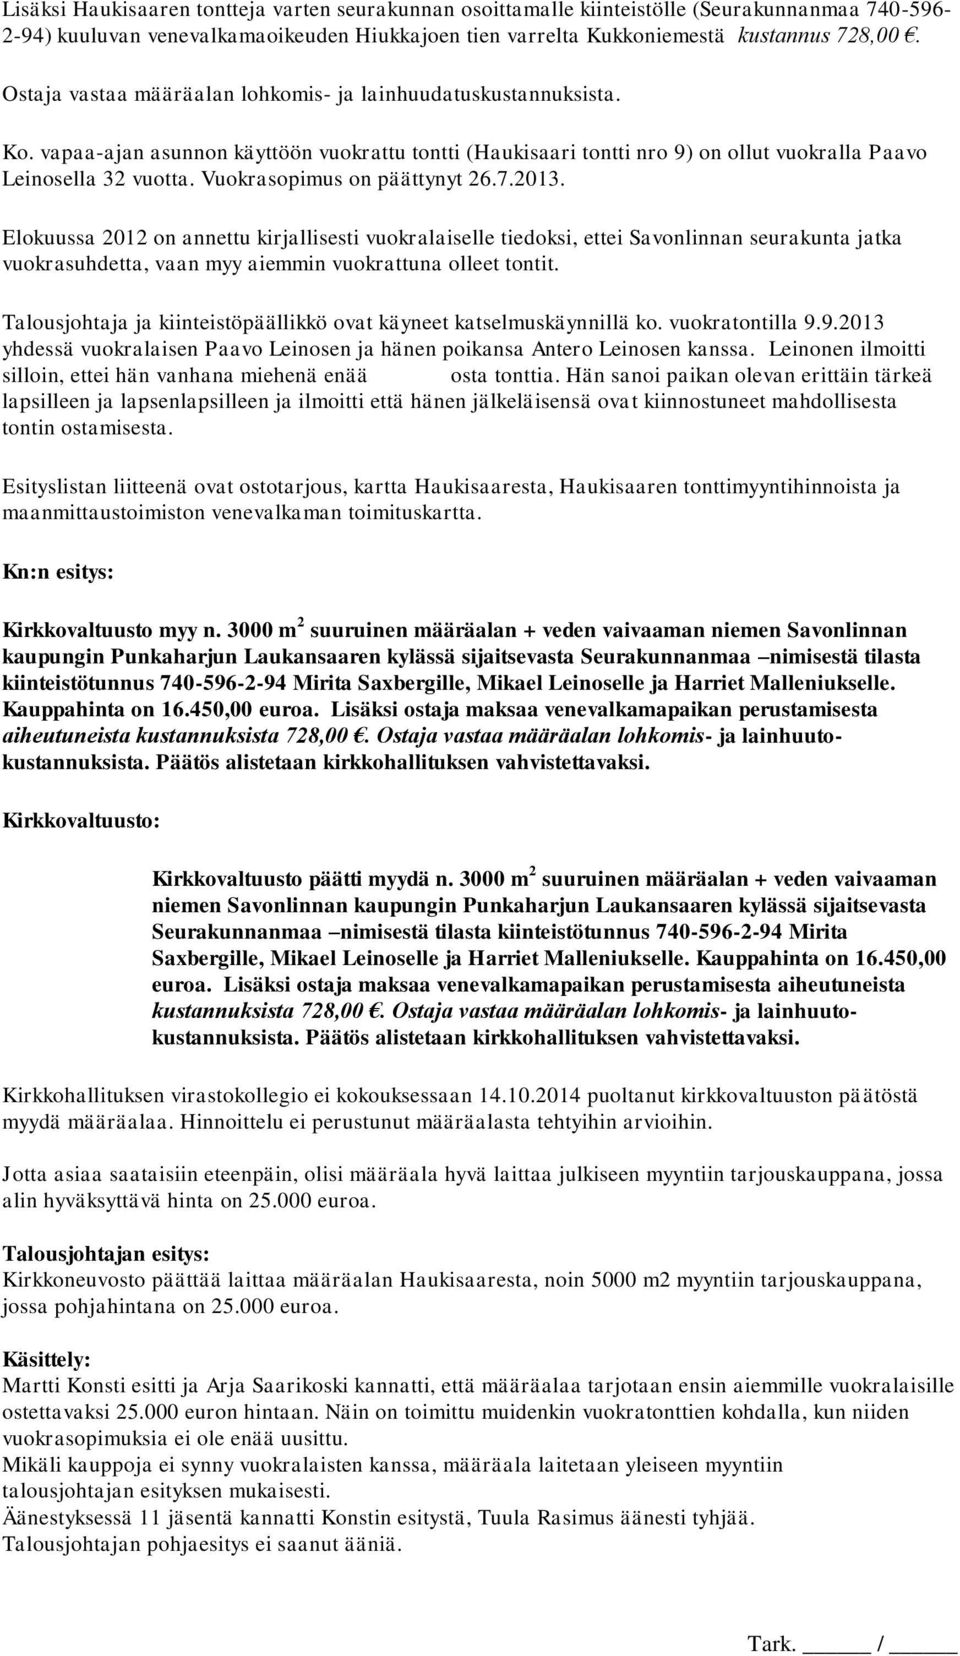 Vuokrasopimus on päättynyt 26.7.2013. Elokuussa 2012 on annettu kirjallisesti vuokralaiselle tiedoksi, ettei Savonlinnan seurakunta jatka vuokrasuhdetta, vaan myy aiemmin vuokrattuna olleet tontit.